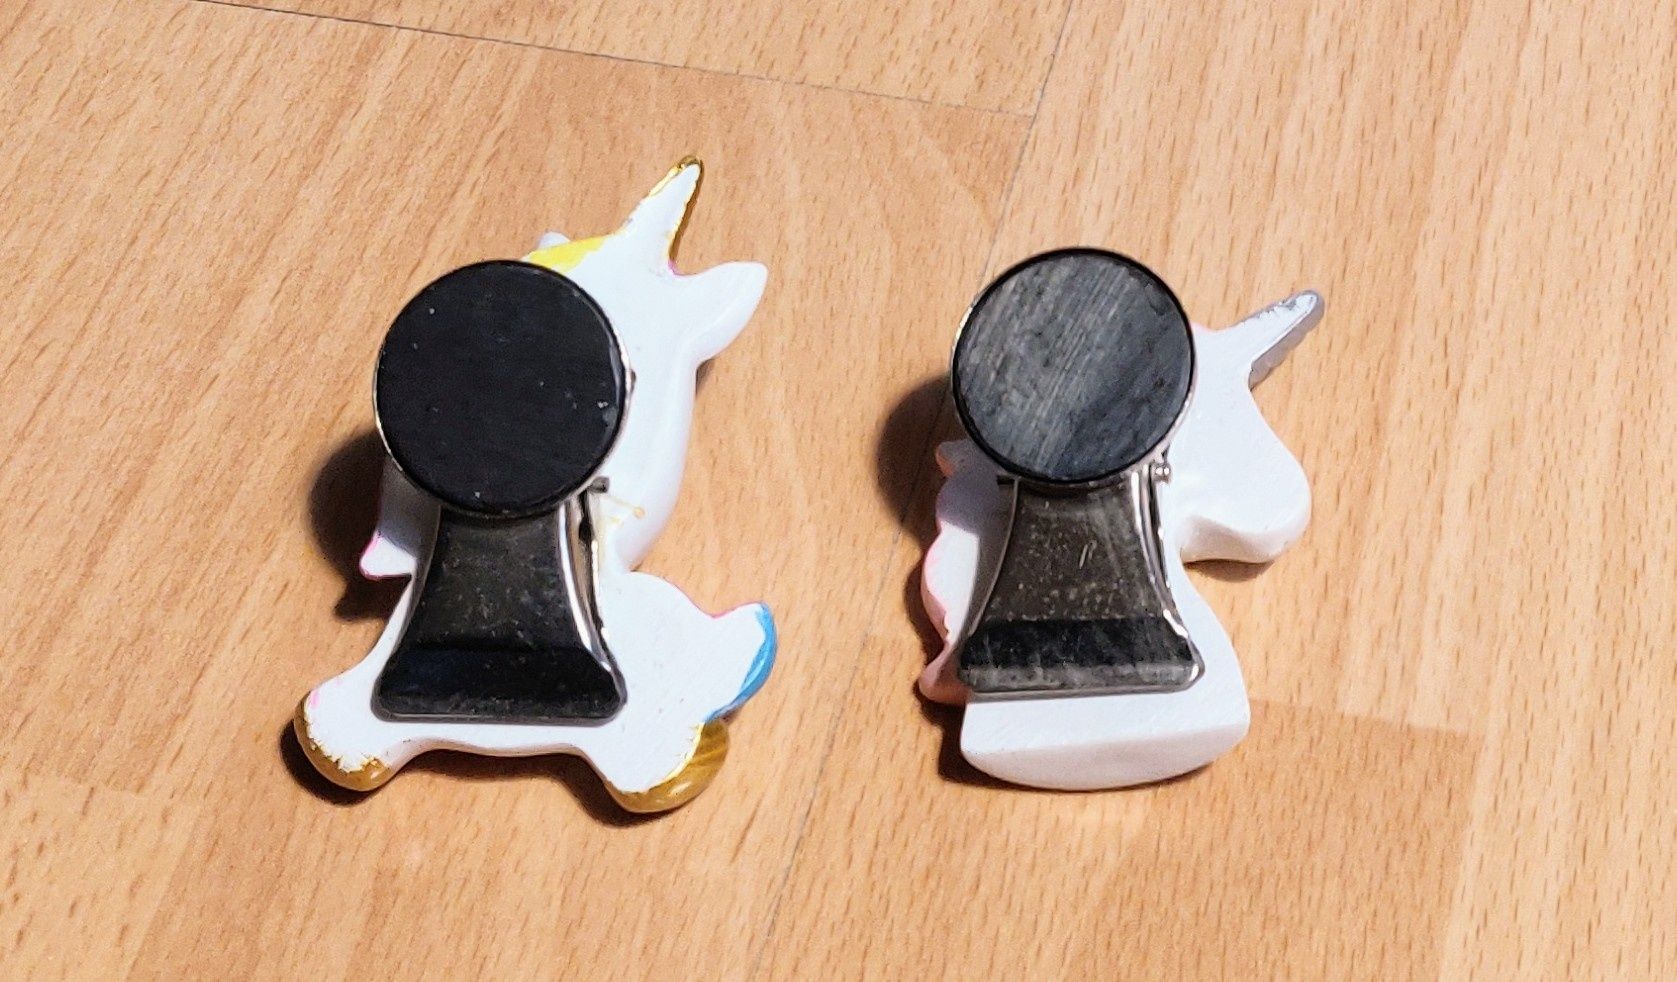 Unicorn jednorożec magnes przypinka ceramiczny 2 szt. OKAZJA